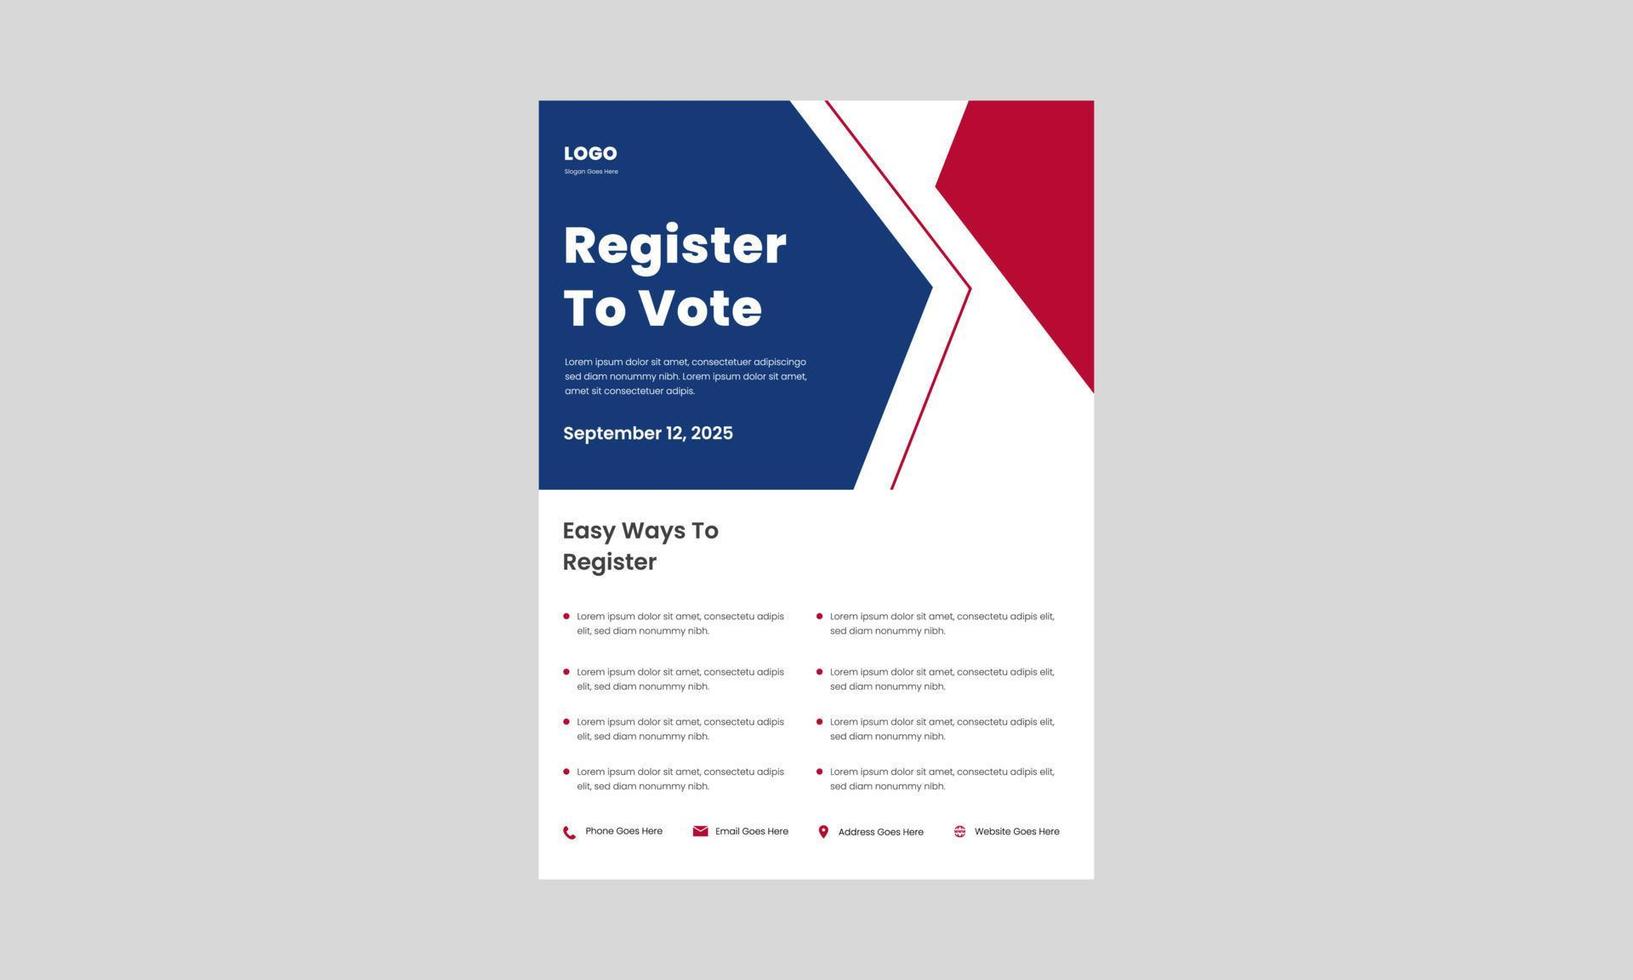 modelo de design de folheto de registro de eleitores. maneira fácil de se registrar para o cartaz de votação, design de folheto. registrar e votar modelo de design de folheto. vetor